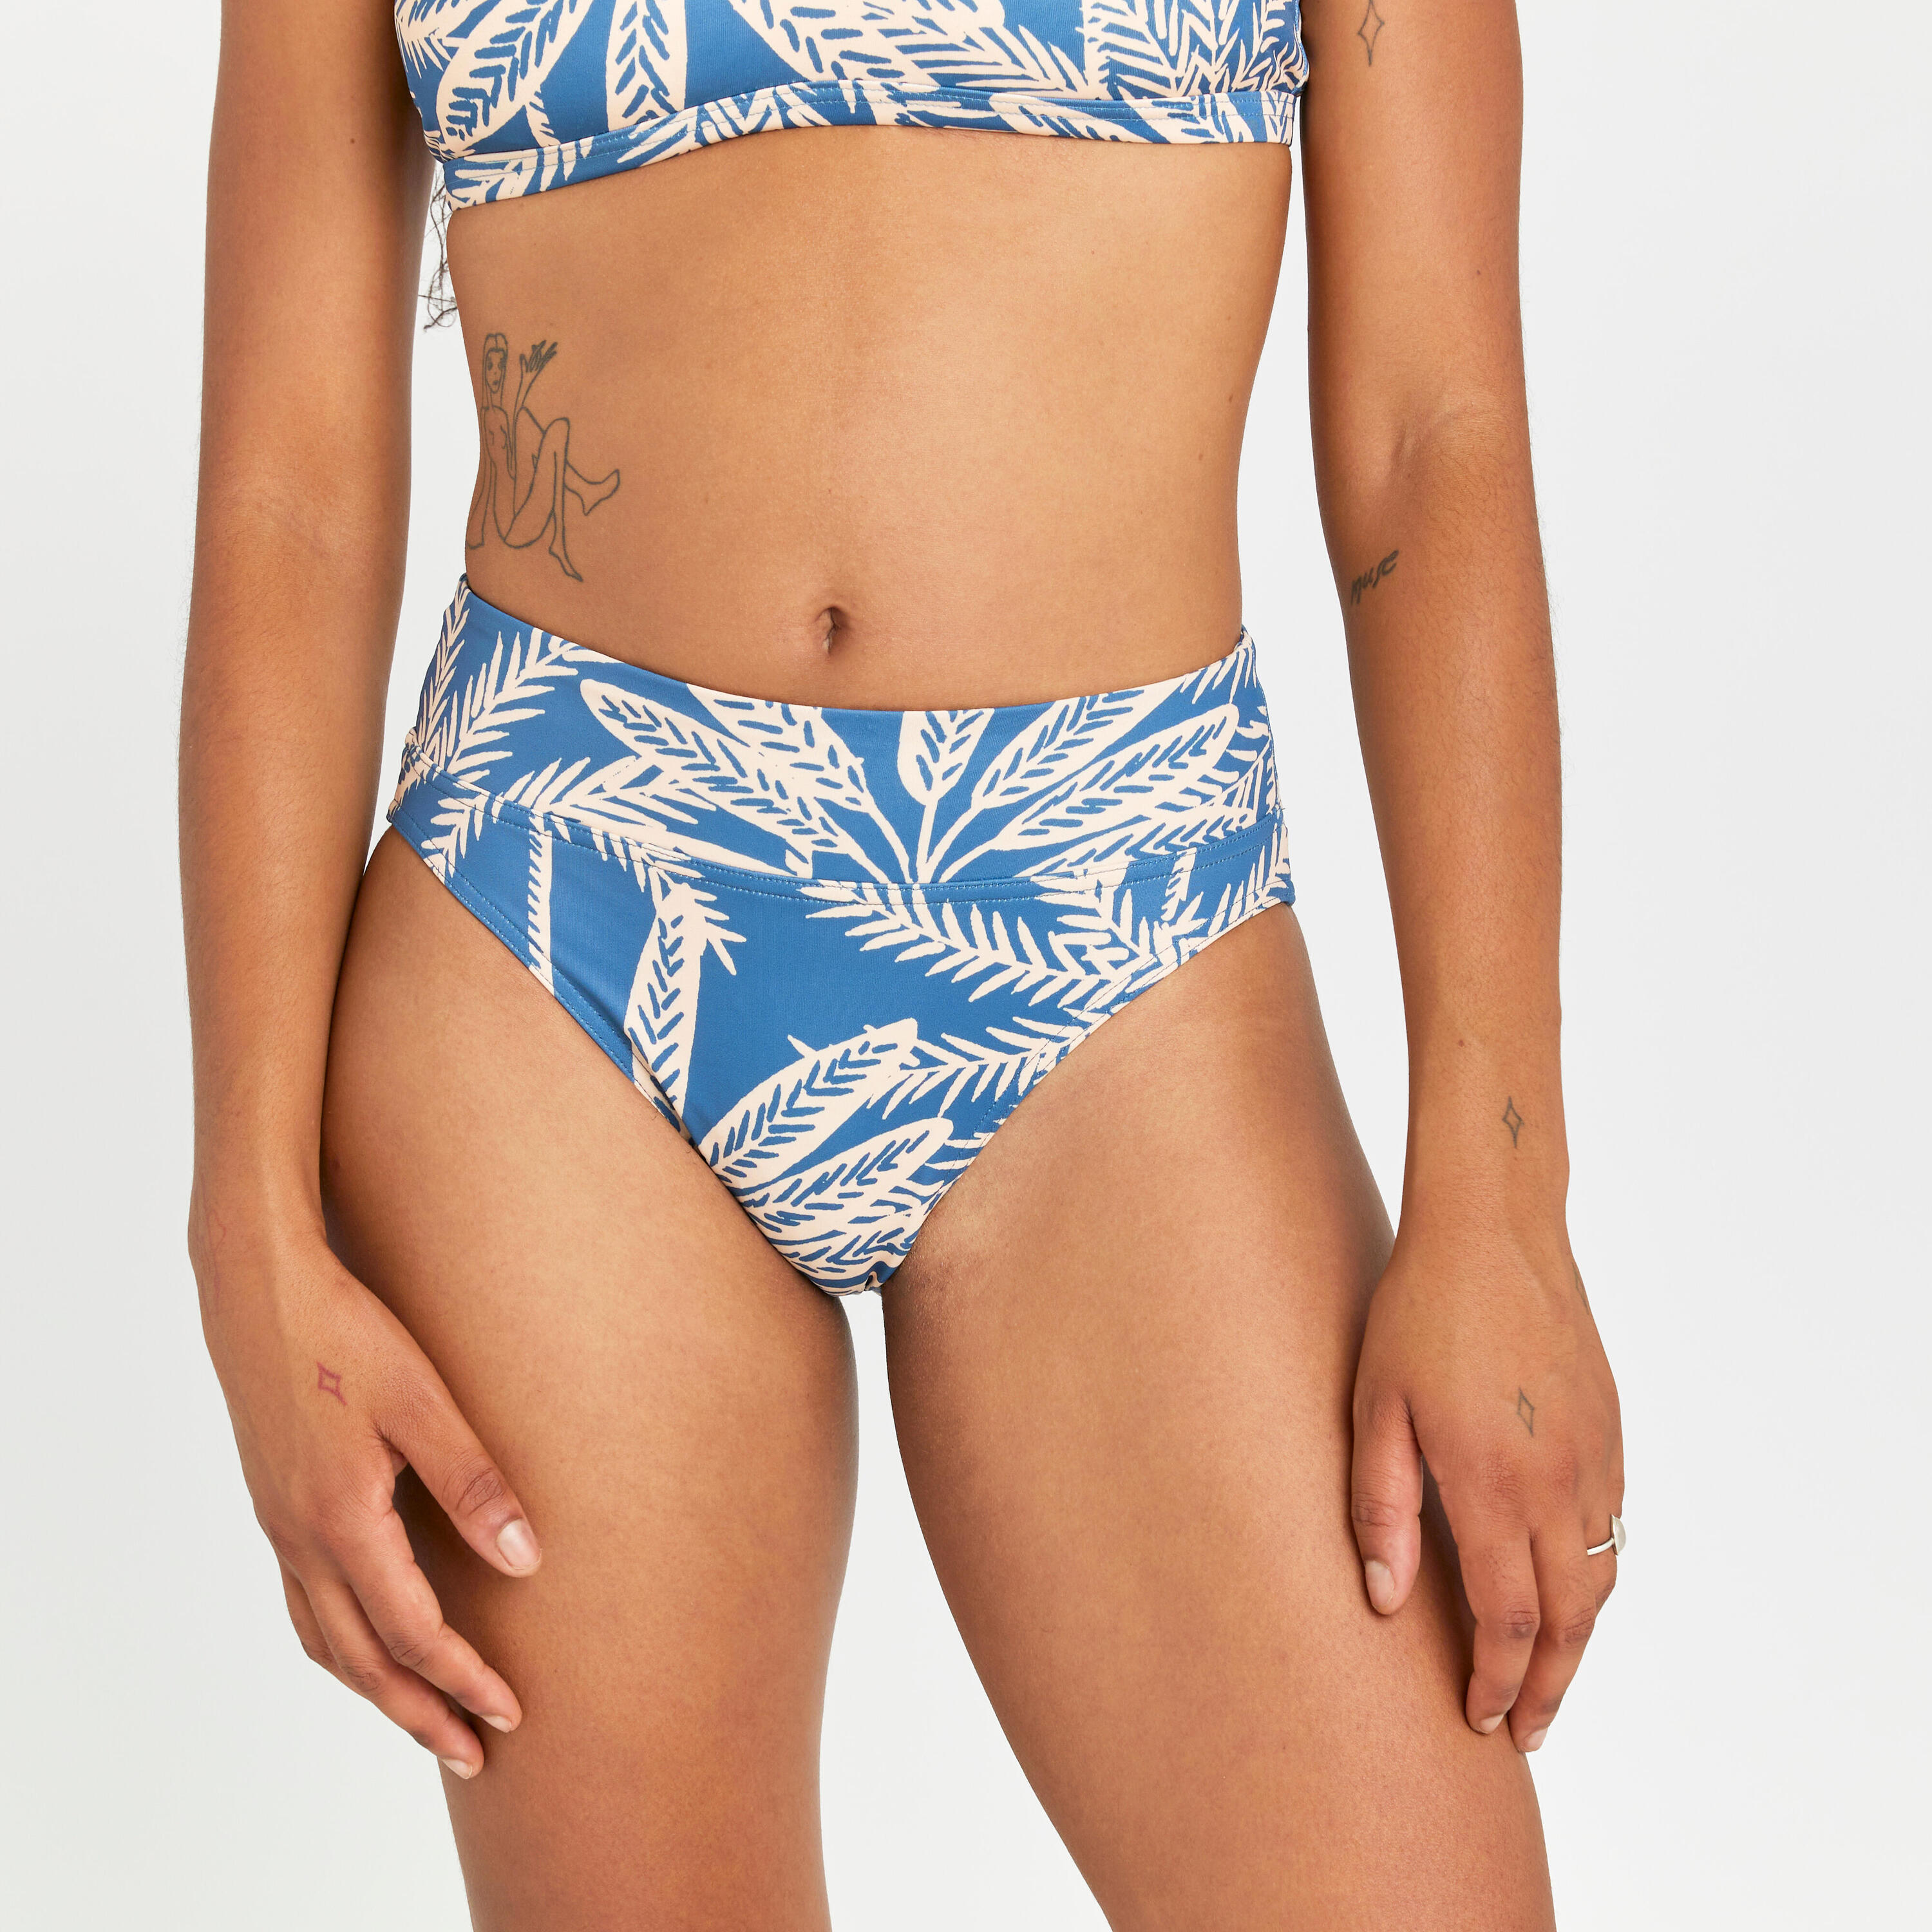 OLAIAN Women's high-waisted briefs swimsuit bottoms - Nora palmer blue